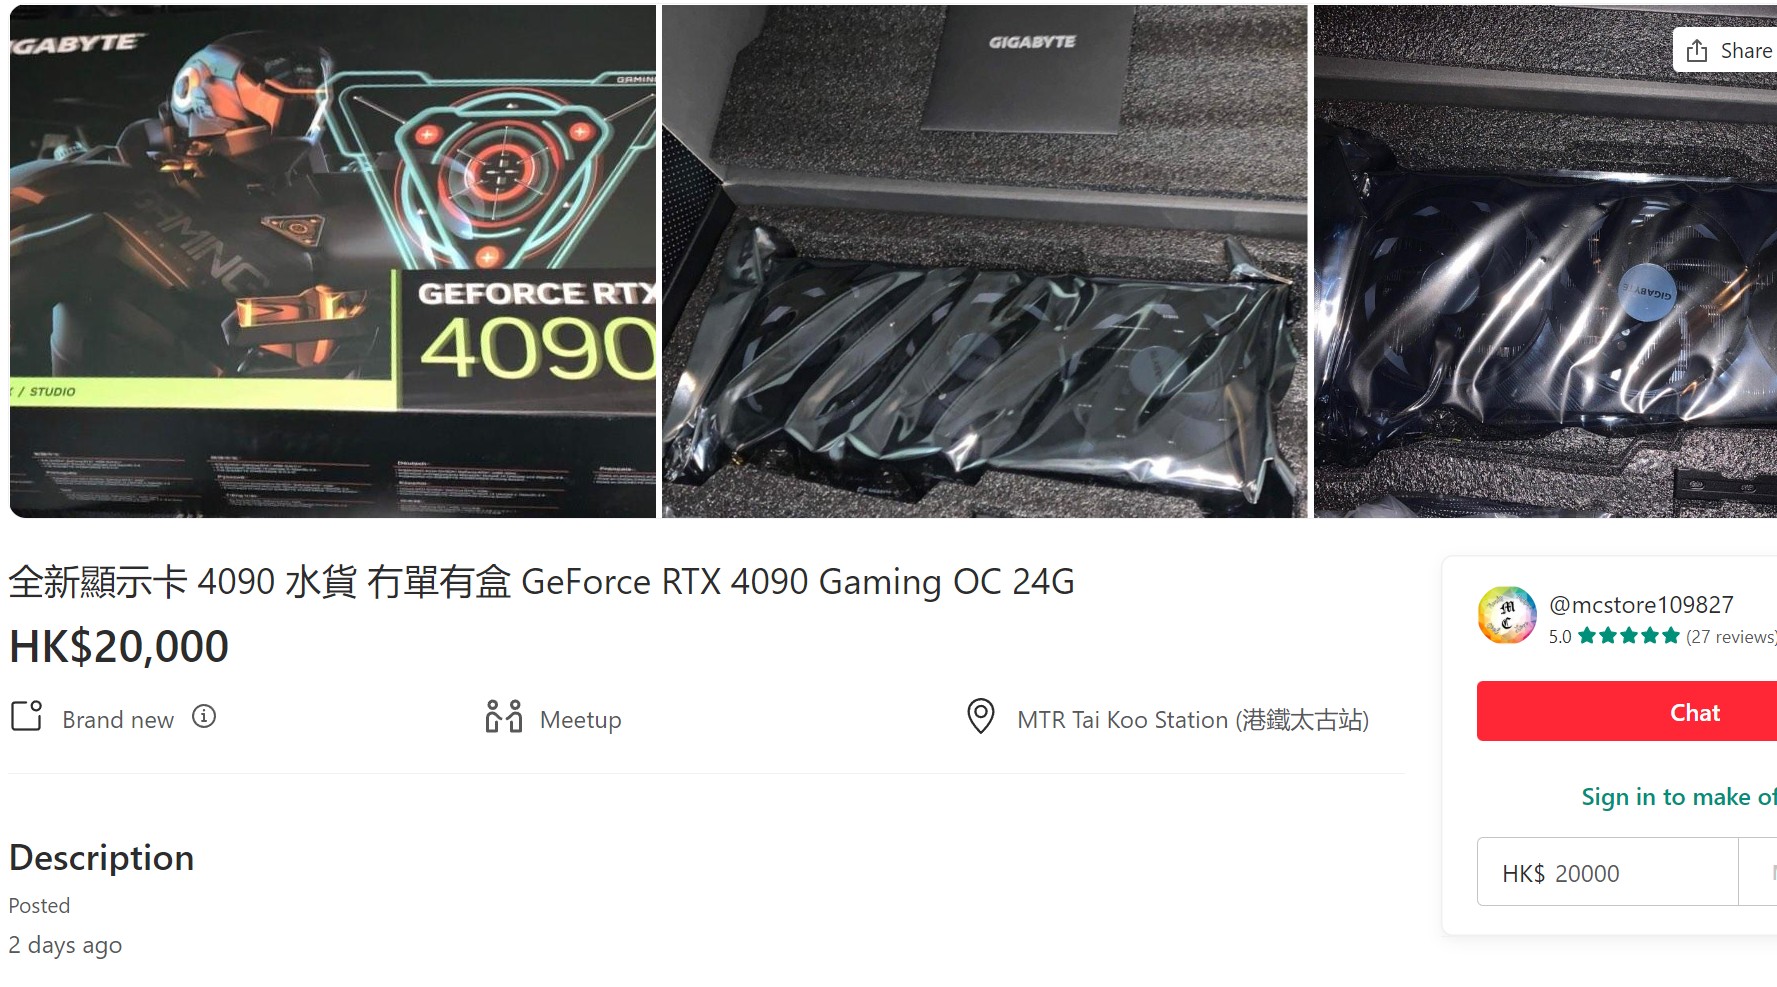 قیمت فروش کارت گرافیک Gigabyte RTX 4090 GAMING OC در هنگ کنگ